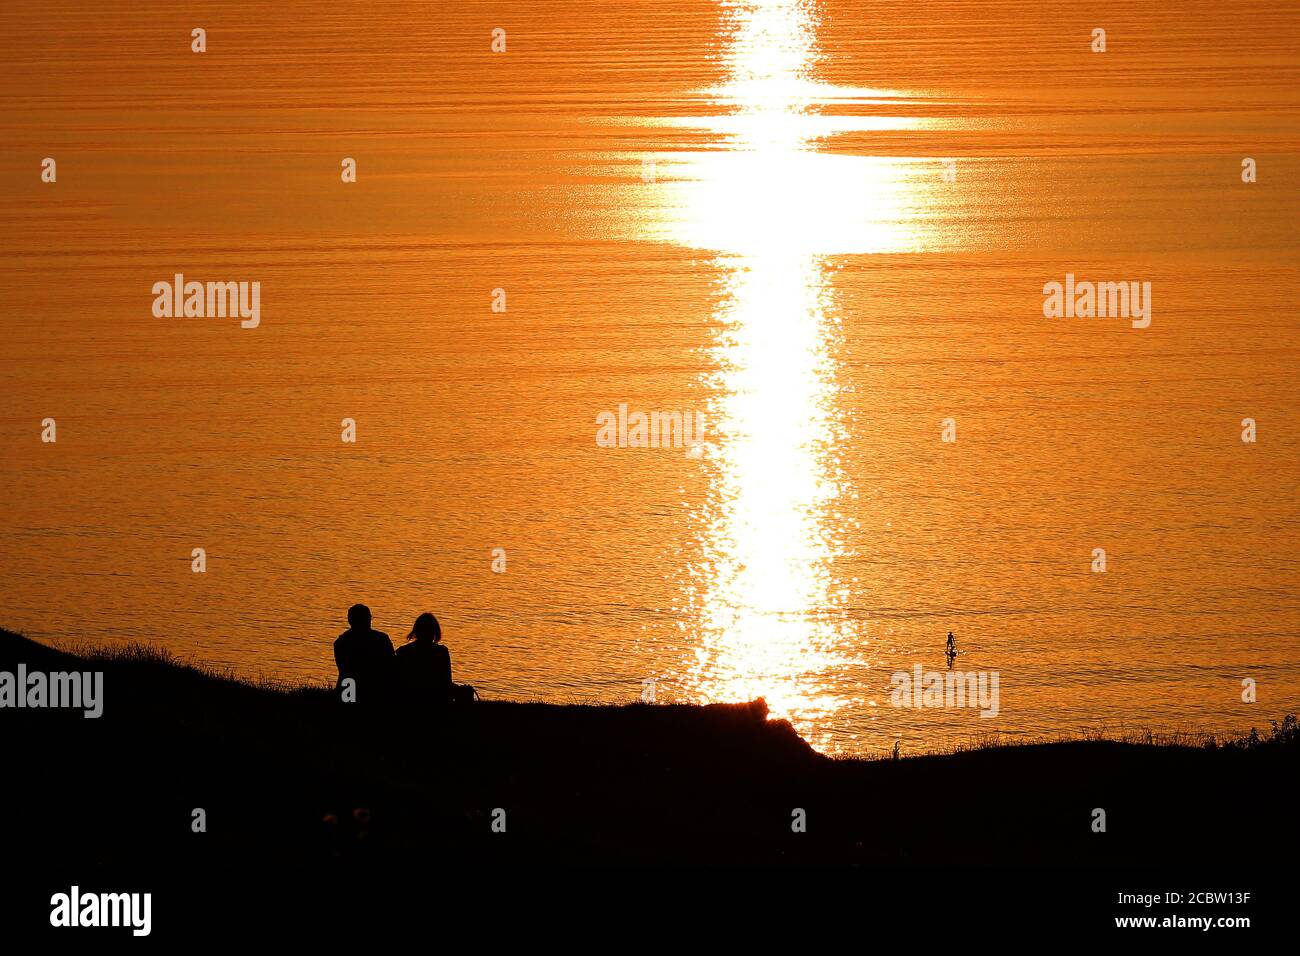 Ein Paddelboarder fährt durch das ruhige Wasser, während ein Paar den Sonnenuntergang an der Rhossili Bay im Gower South Wales an einem wunderschönen Sonnenuntergang-Abend beobachten kann Stockfoto